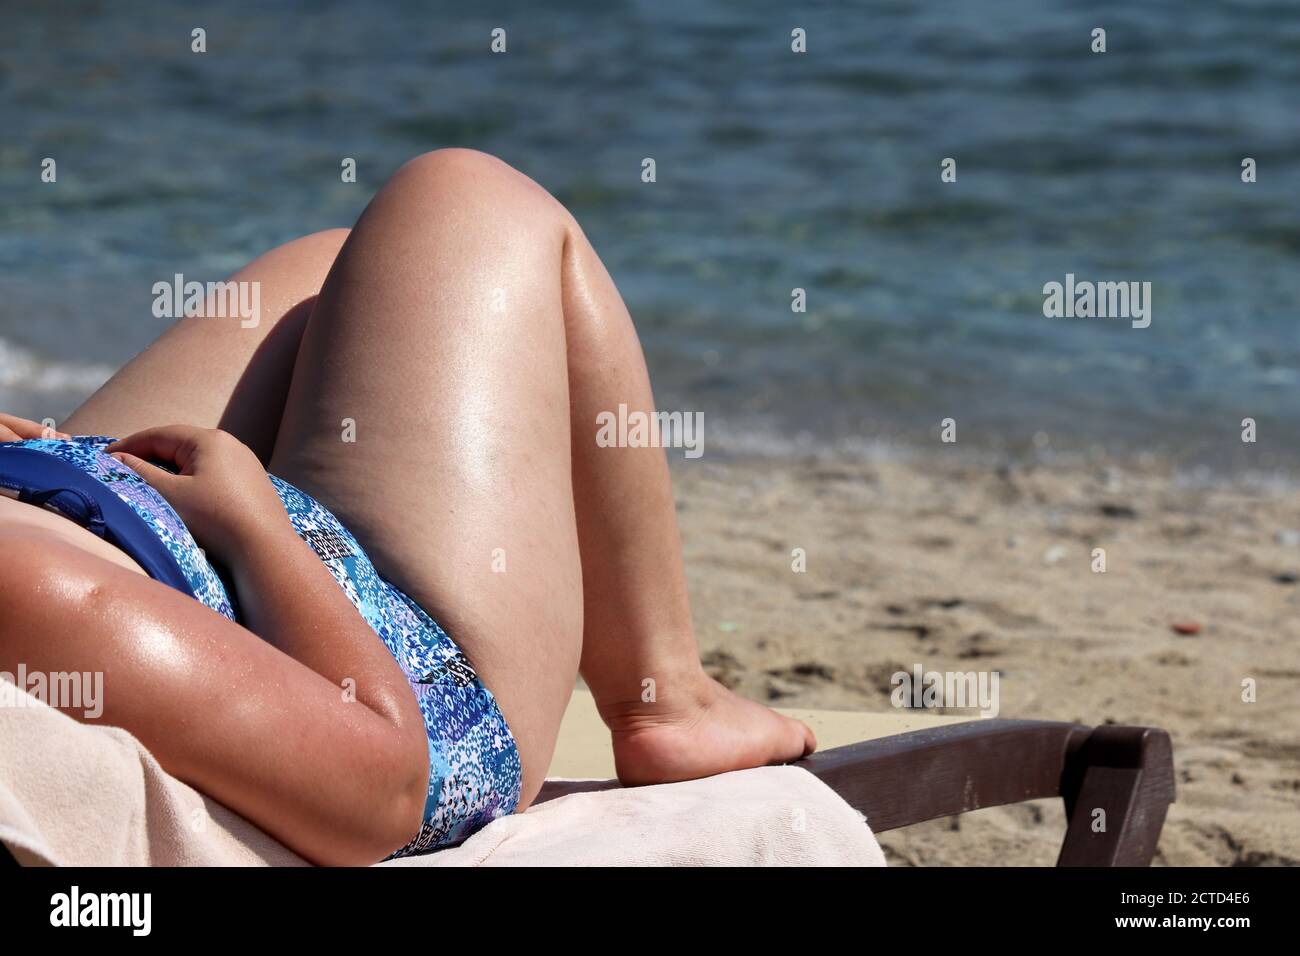 Fat Frau Gerben auf einem Strand auf Meereswellen Hintergrund. Übergewicht und Adipositas Konzept Stockfoto